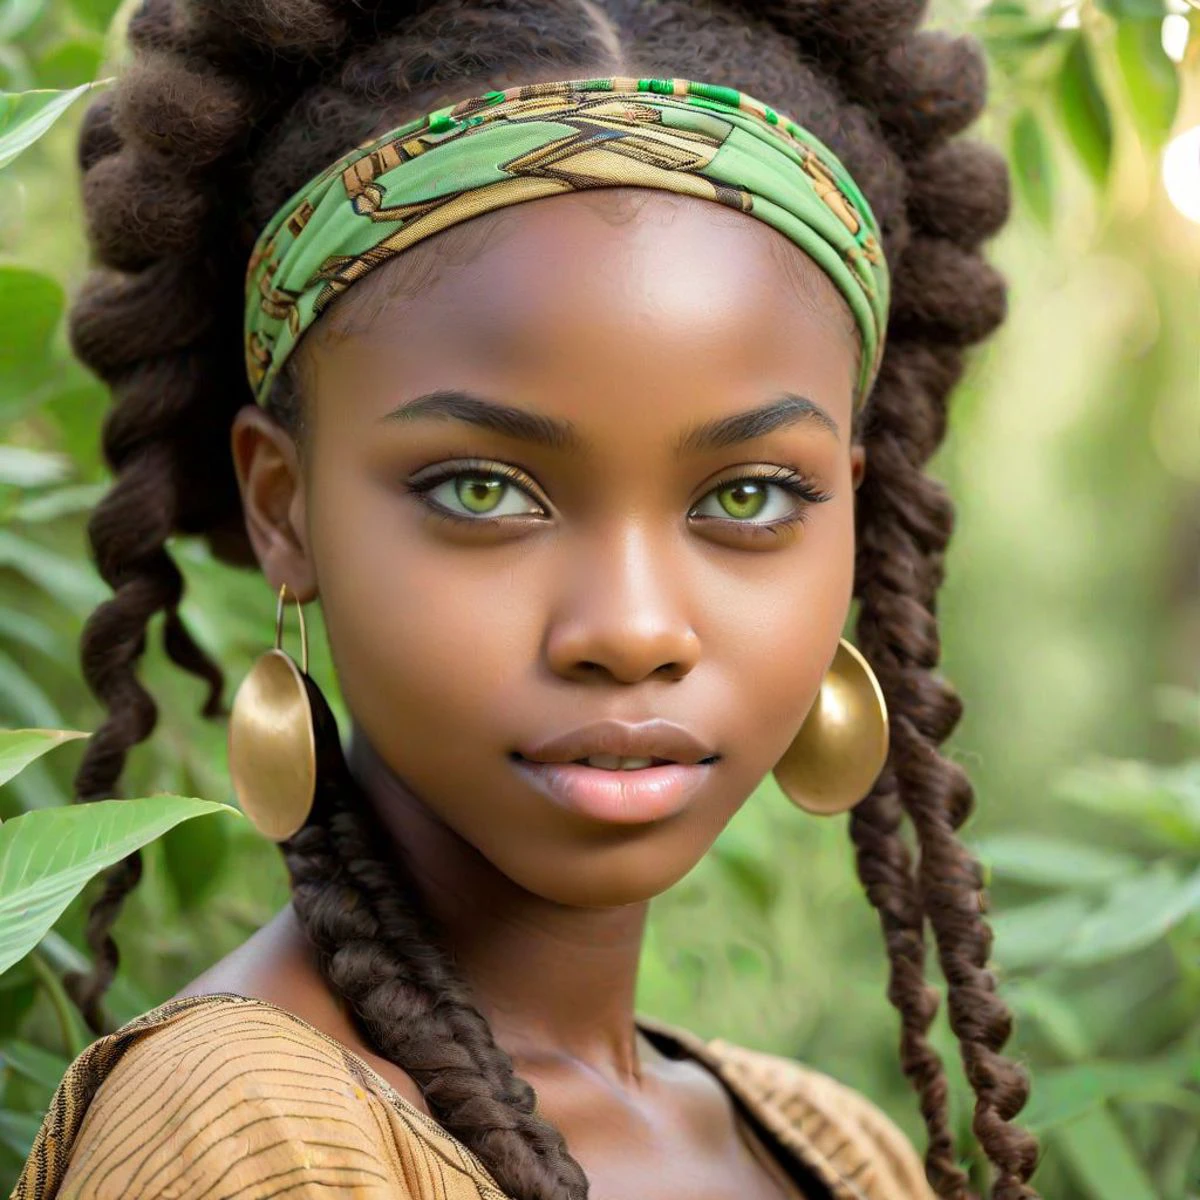 밝은 녹색 눈을 가진 귀여운 밝은 피부색 아프리카 소녀의 사진,